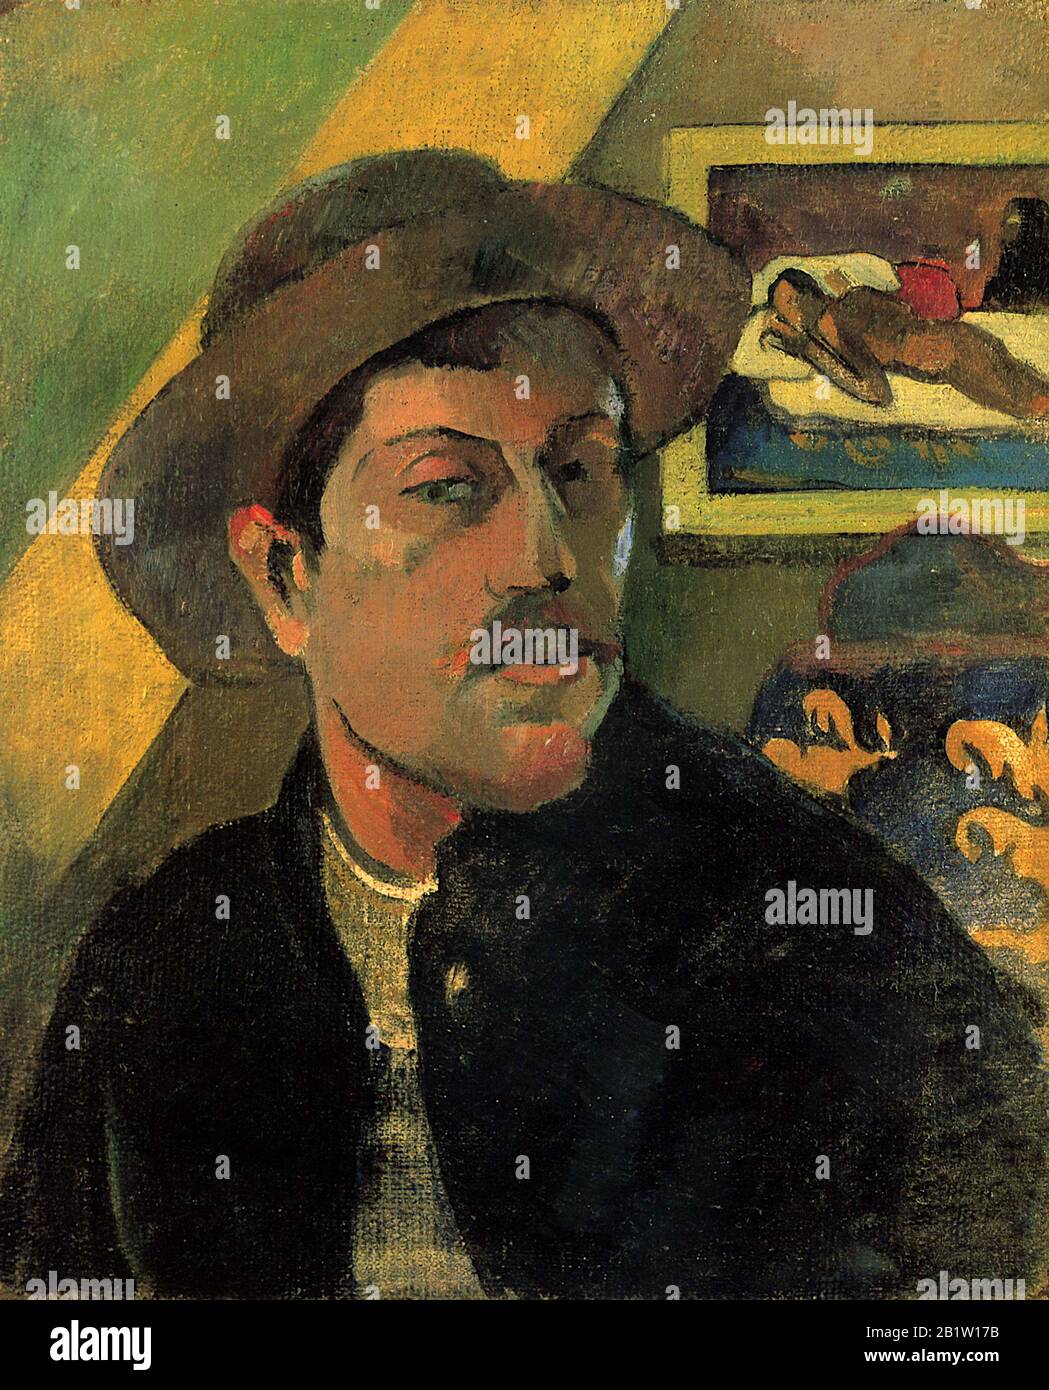 Autoritratto in cappello (1893) 19th Secolo Pittura di Paul Gauguin - Immagine Ad Altissima risoluzione e qualità Foto Stock